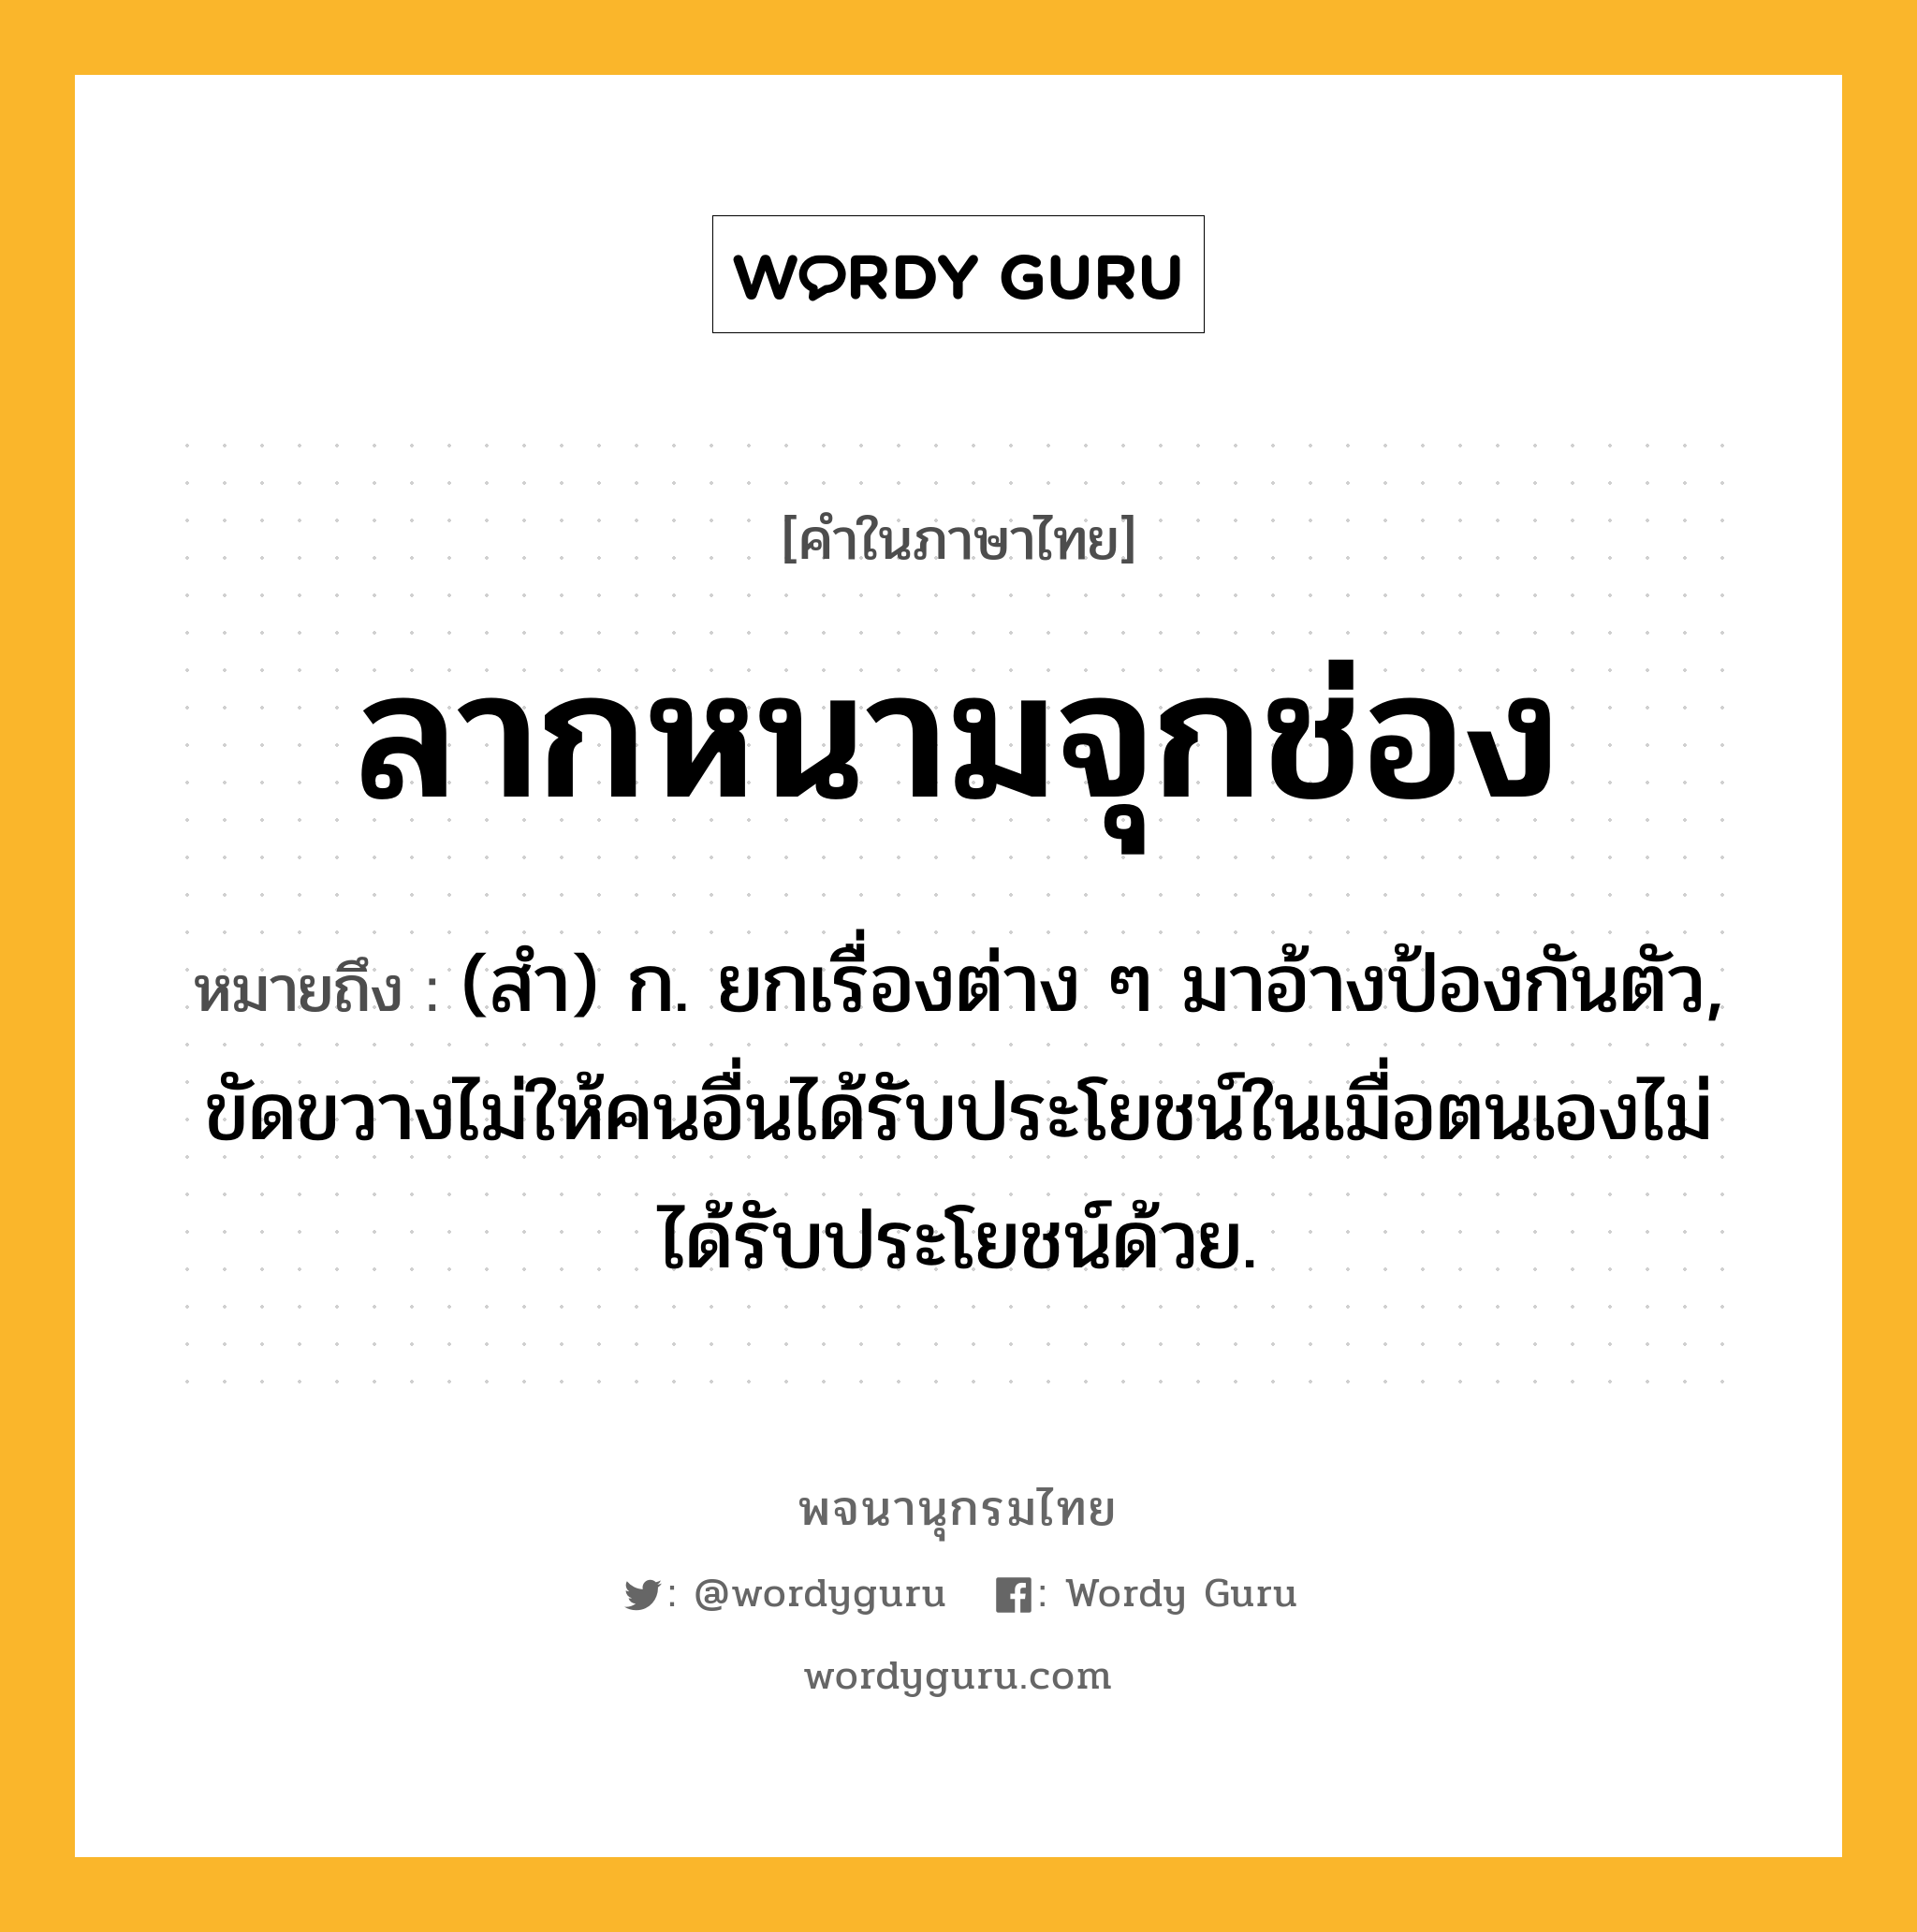 ลากหนามจุกช่อง หมายถึงอะไร?, คำในภาษาไทย ลากหนามจุกช่อง หมายถึง (สํา) ก. ยกเรื่องต่าง ๆ มาอ้างป้องกันตัว, ขัดขวางไม่ให้คนอื่นได้รับประโยชน์ในเมื่อตนเองไม่ได้รับประโยชน์ด้วย.